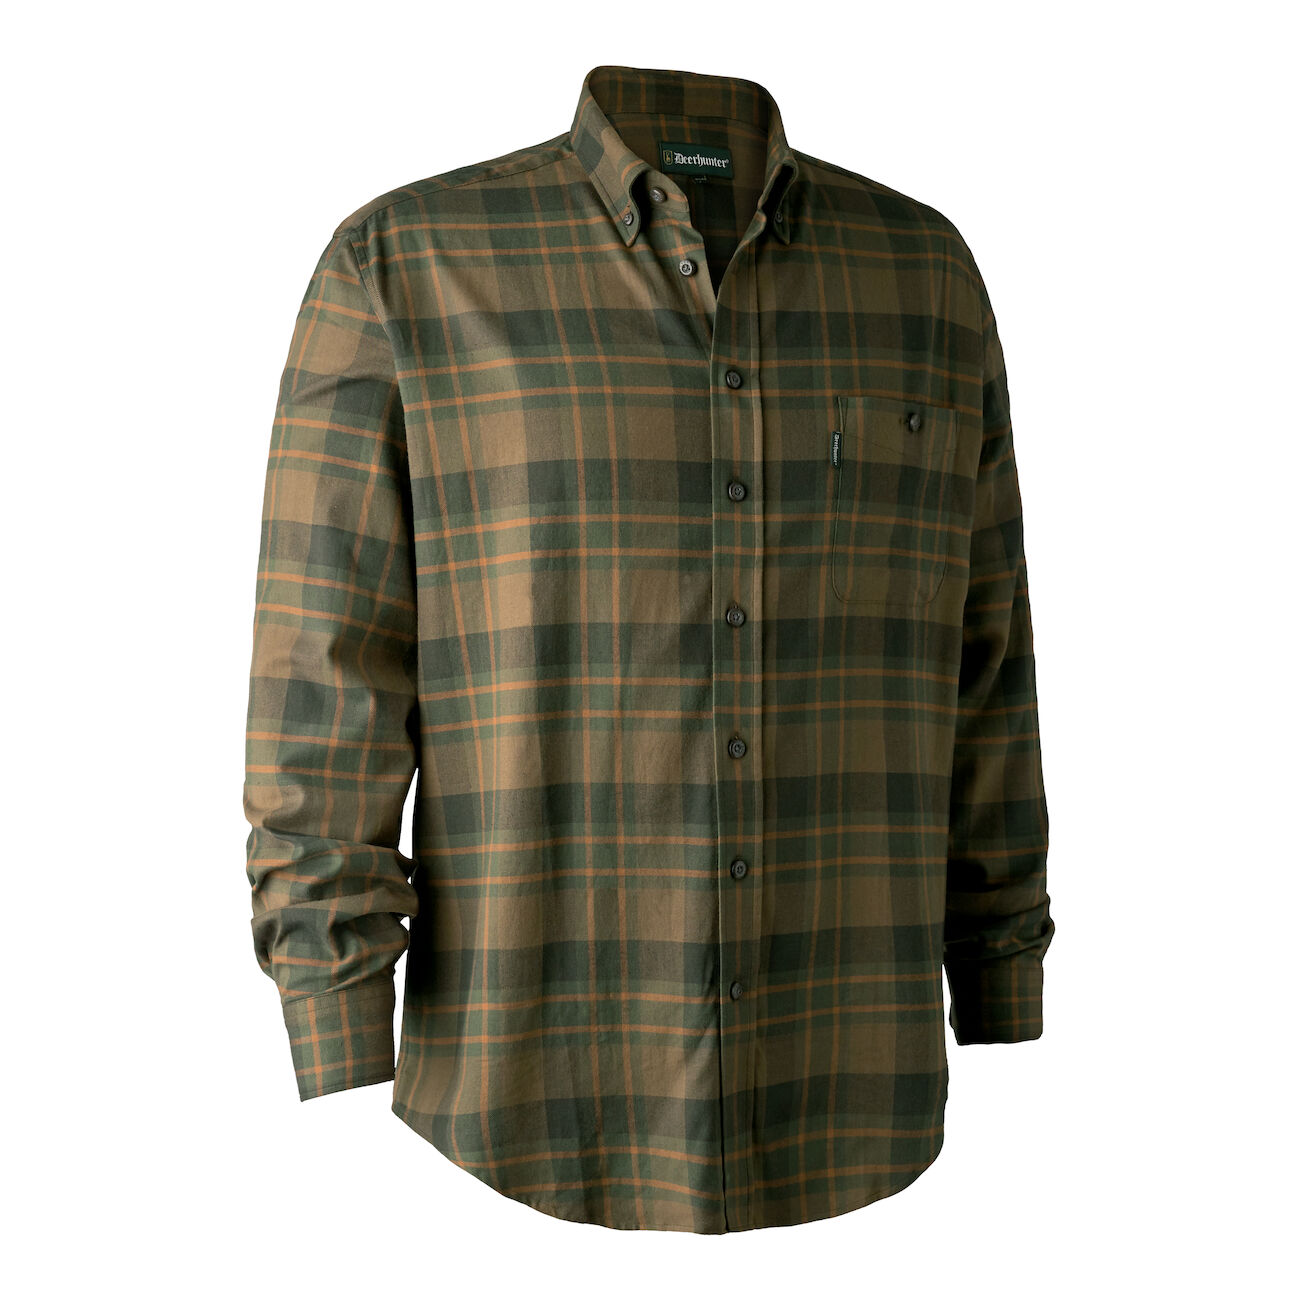 Pánska poľovnícka košeľa Deerhunter Kyle - Green Check    43/44